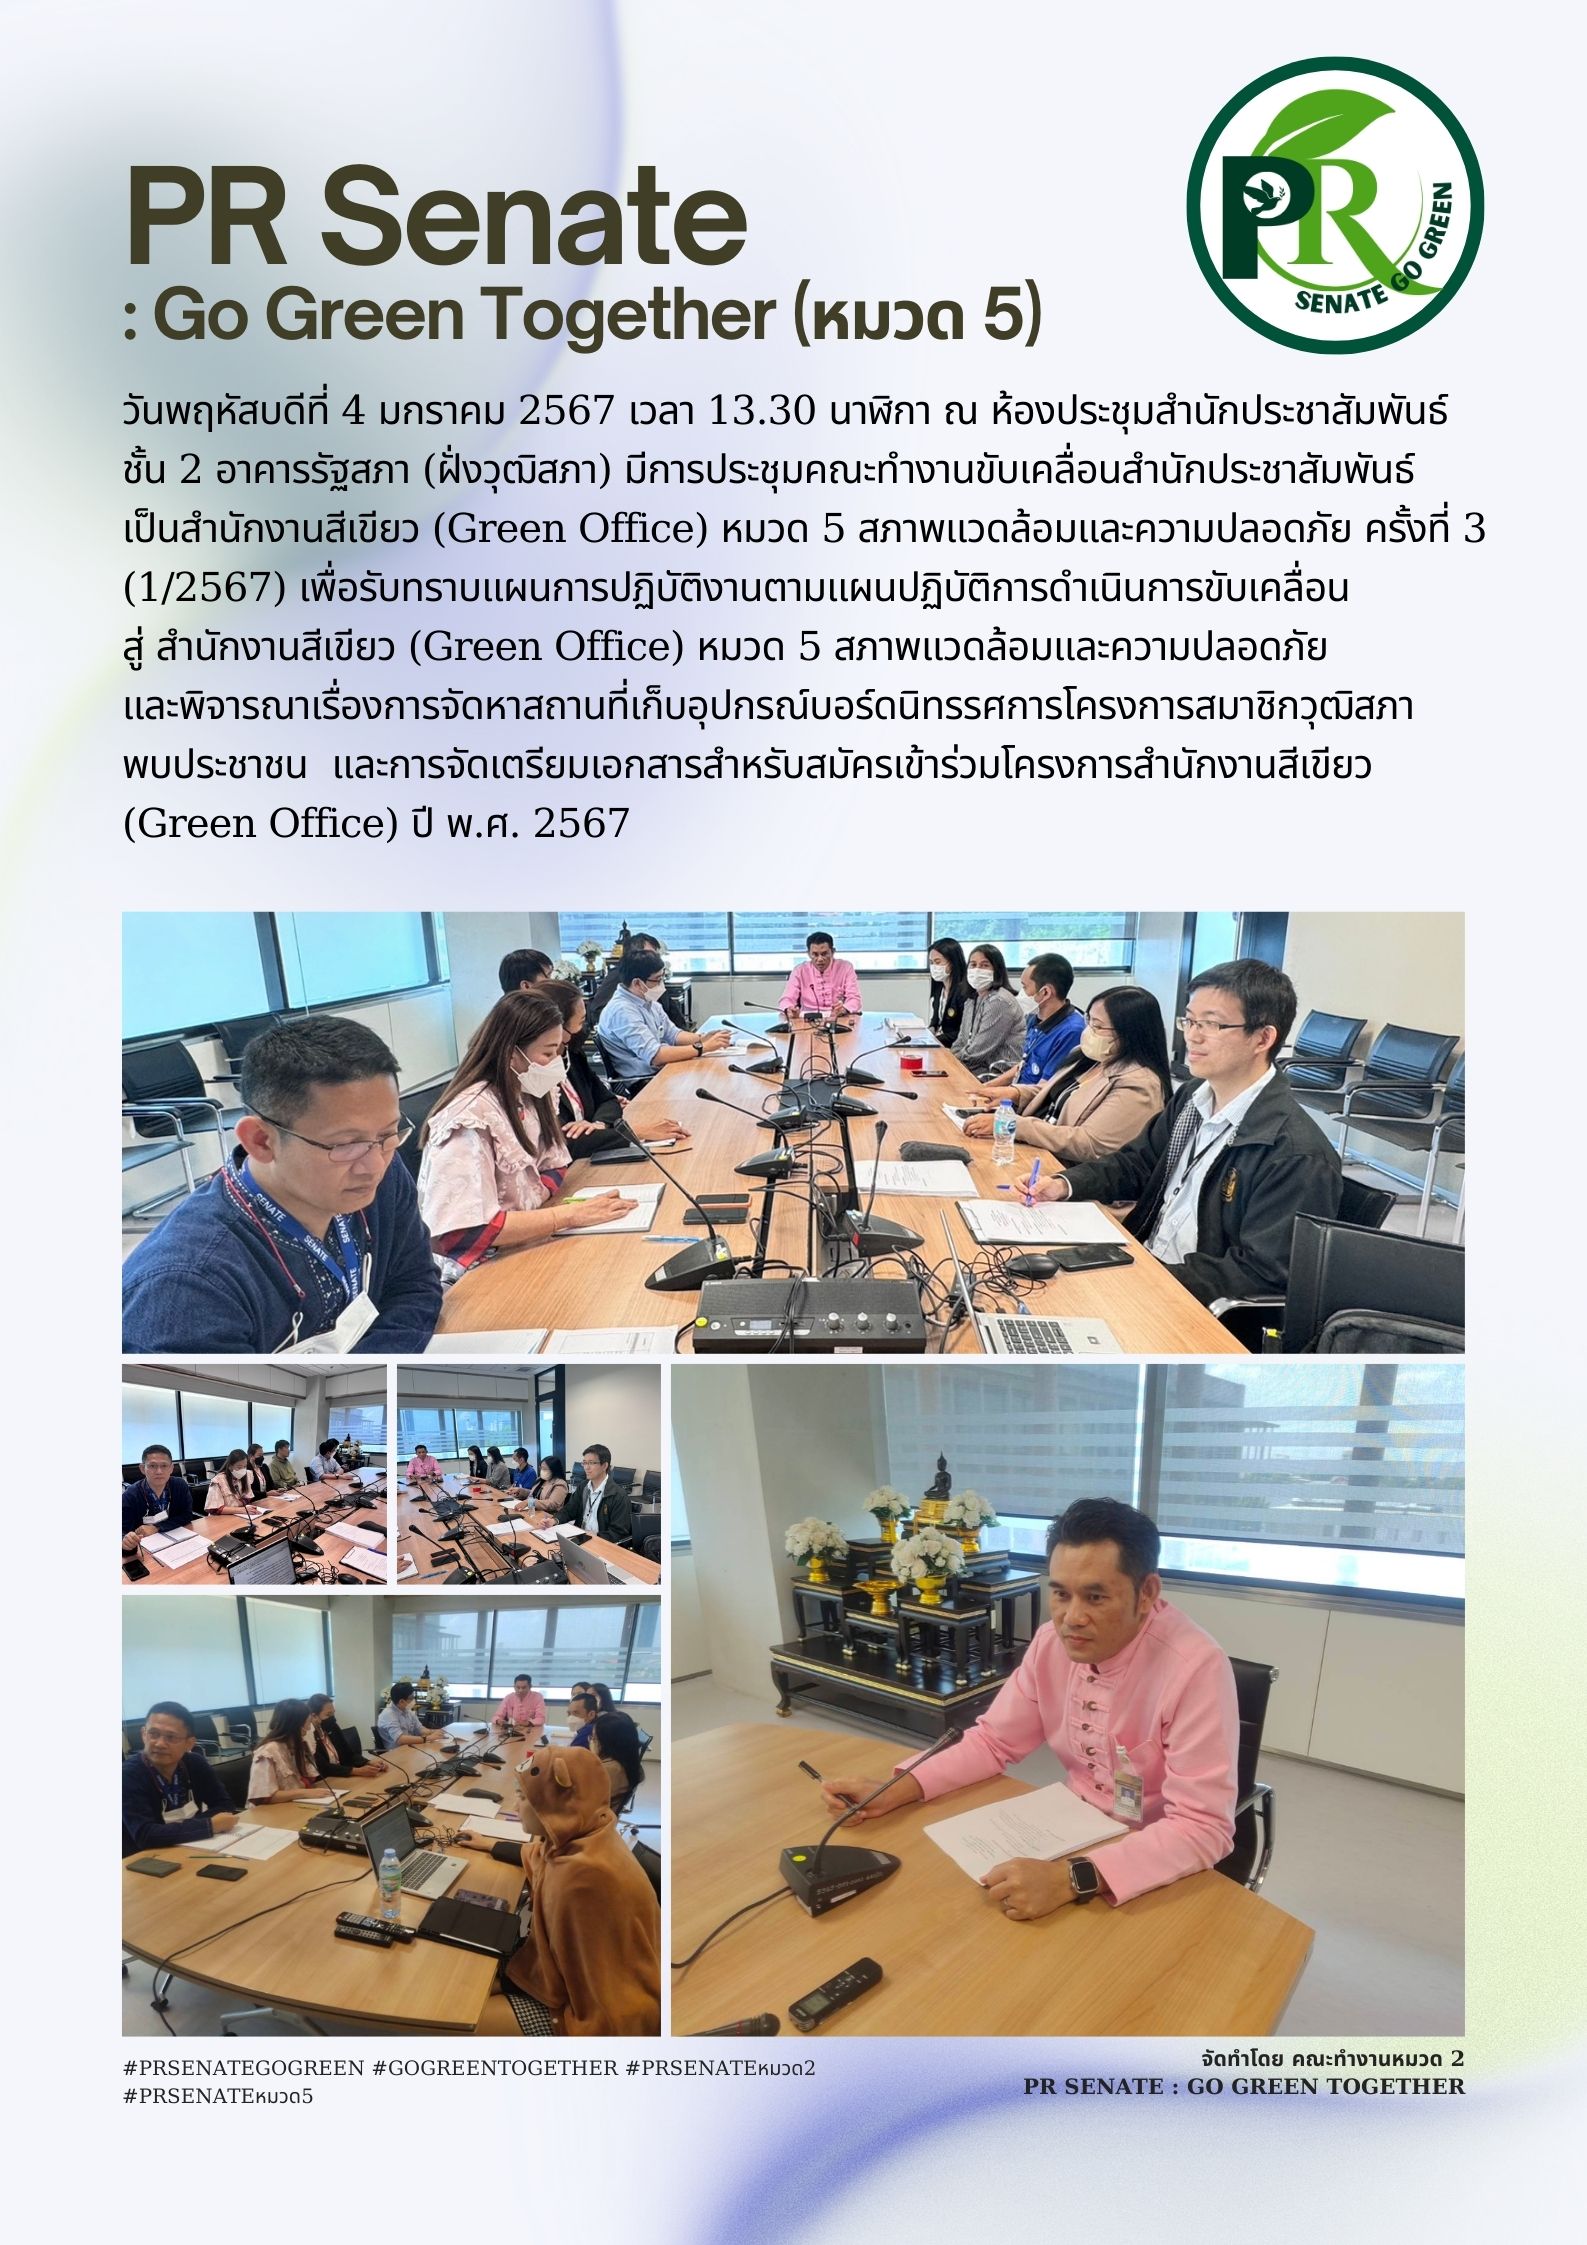 ประชุมคณะทำงานขับเคลื่อนสำนักประชาสัมพันธ์เป็นสำนักงานสีเขียว (Green Office) หมวด 5 สภาพแวดล้อมและความปลอดภัย ครั้งที่ 3  (1/2567)